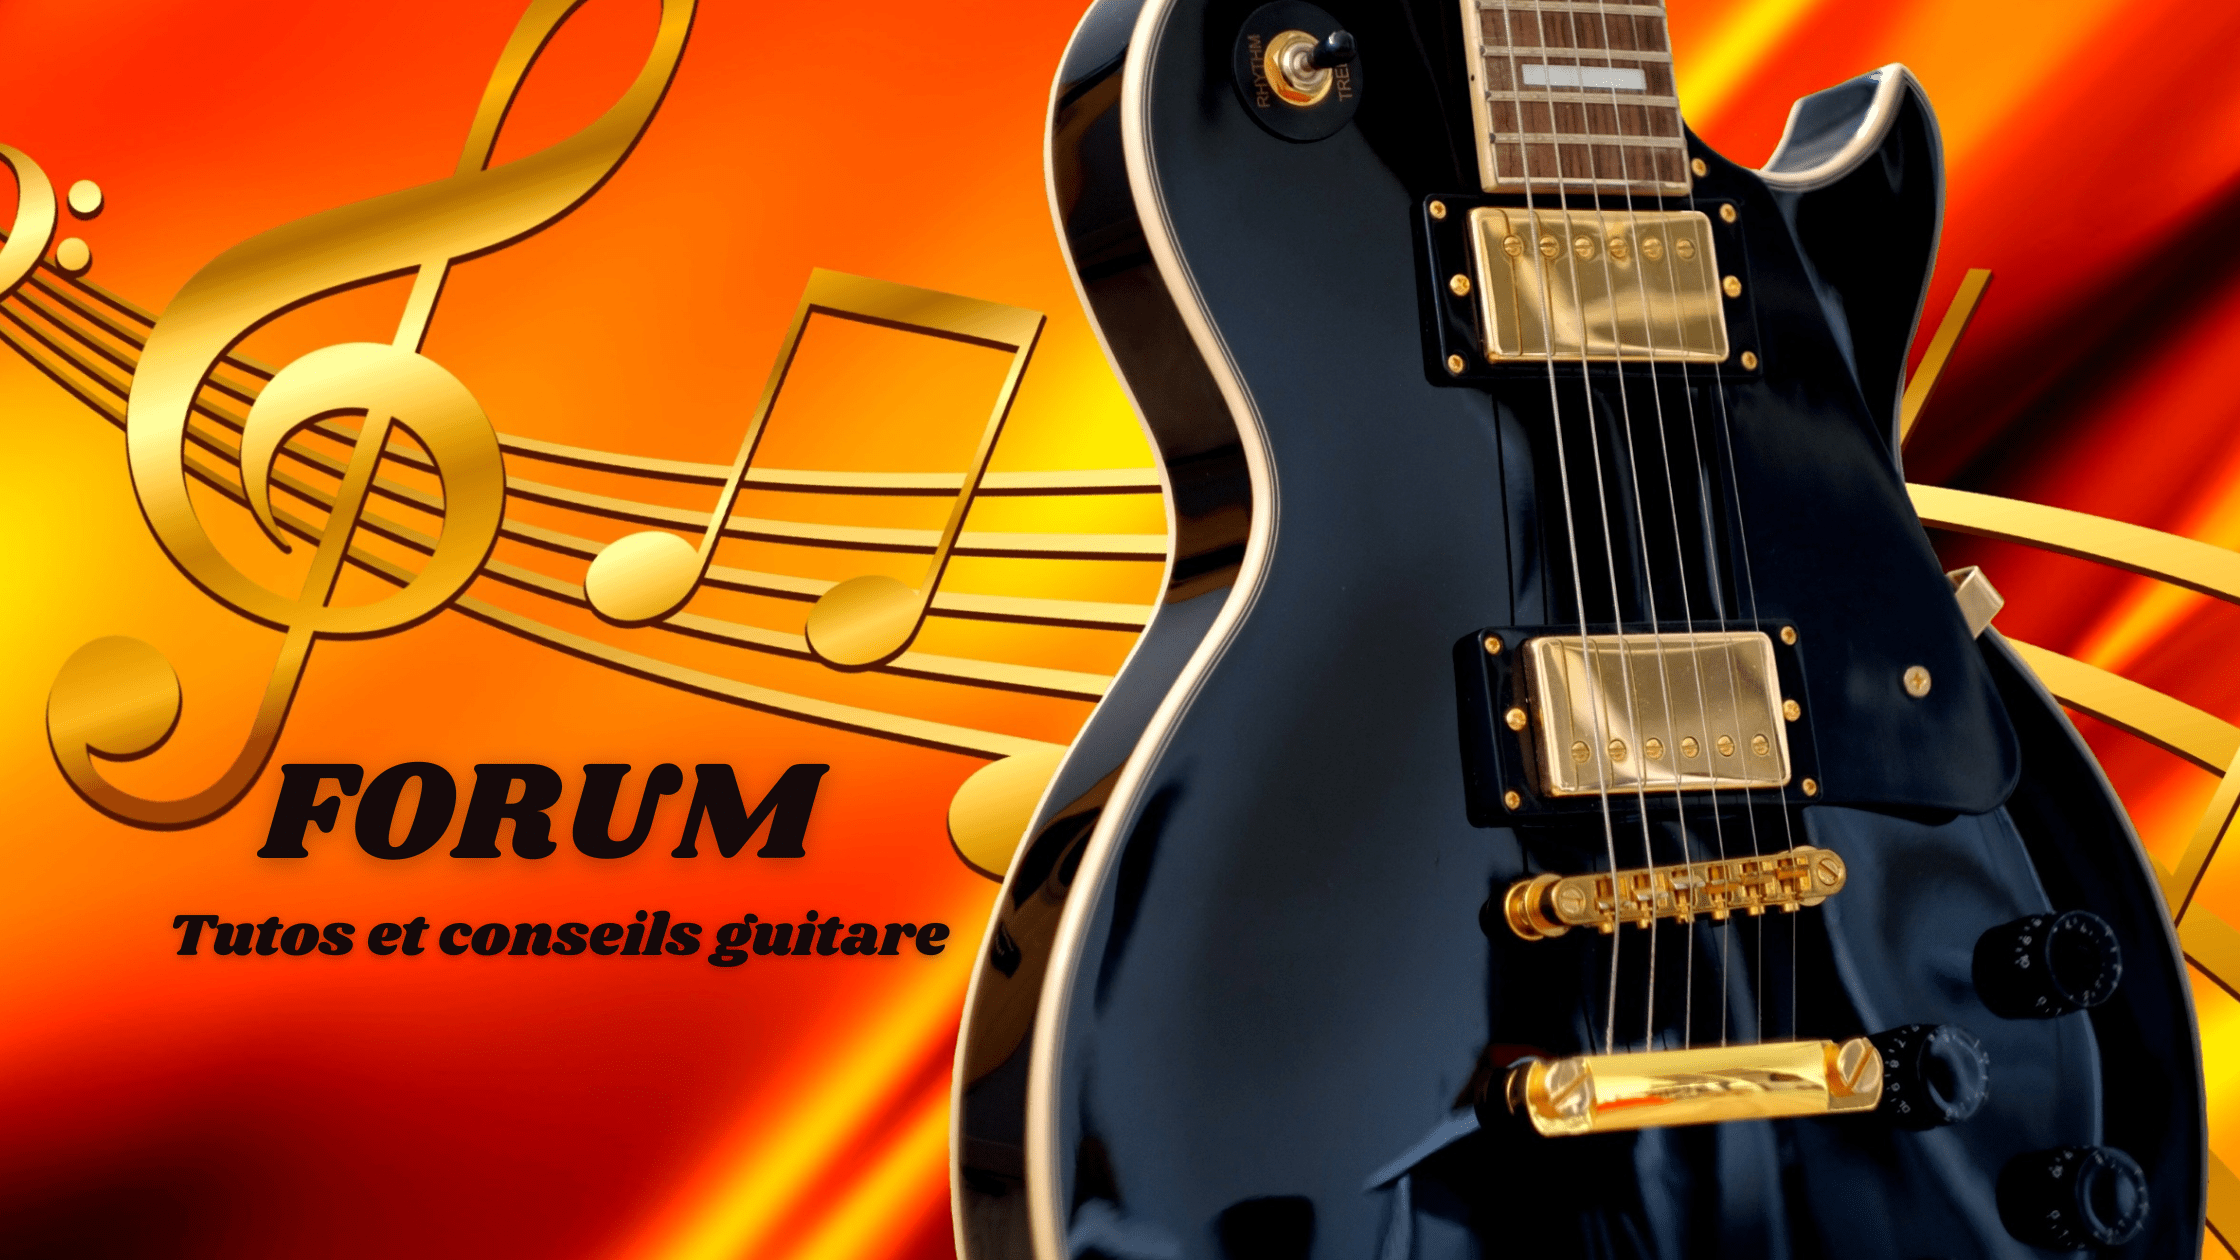 Forum tutos et conseils pour guitaristes